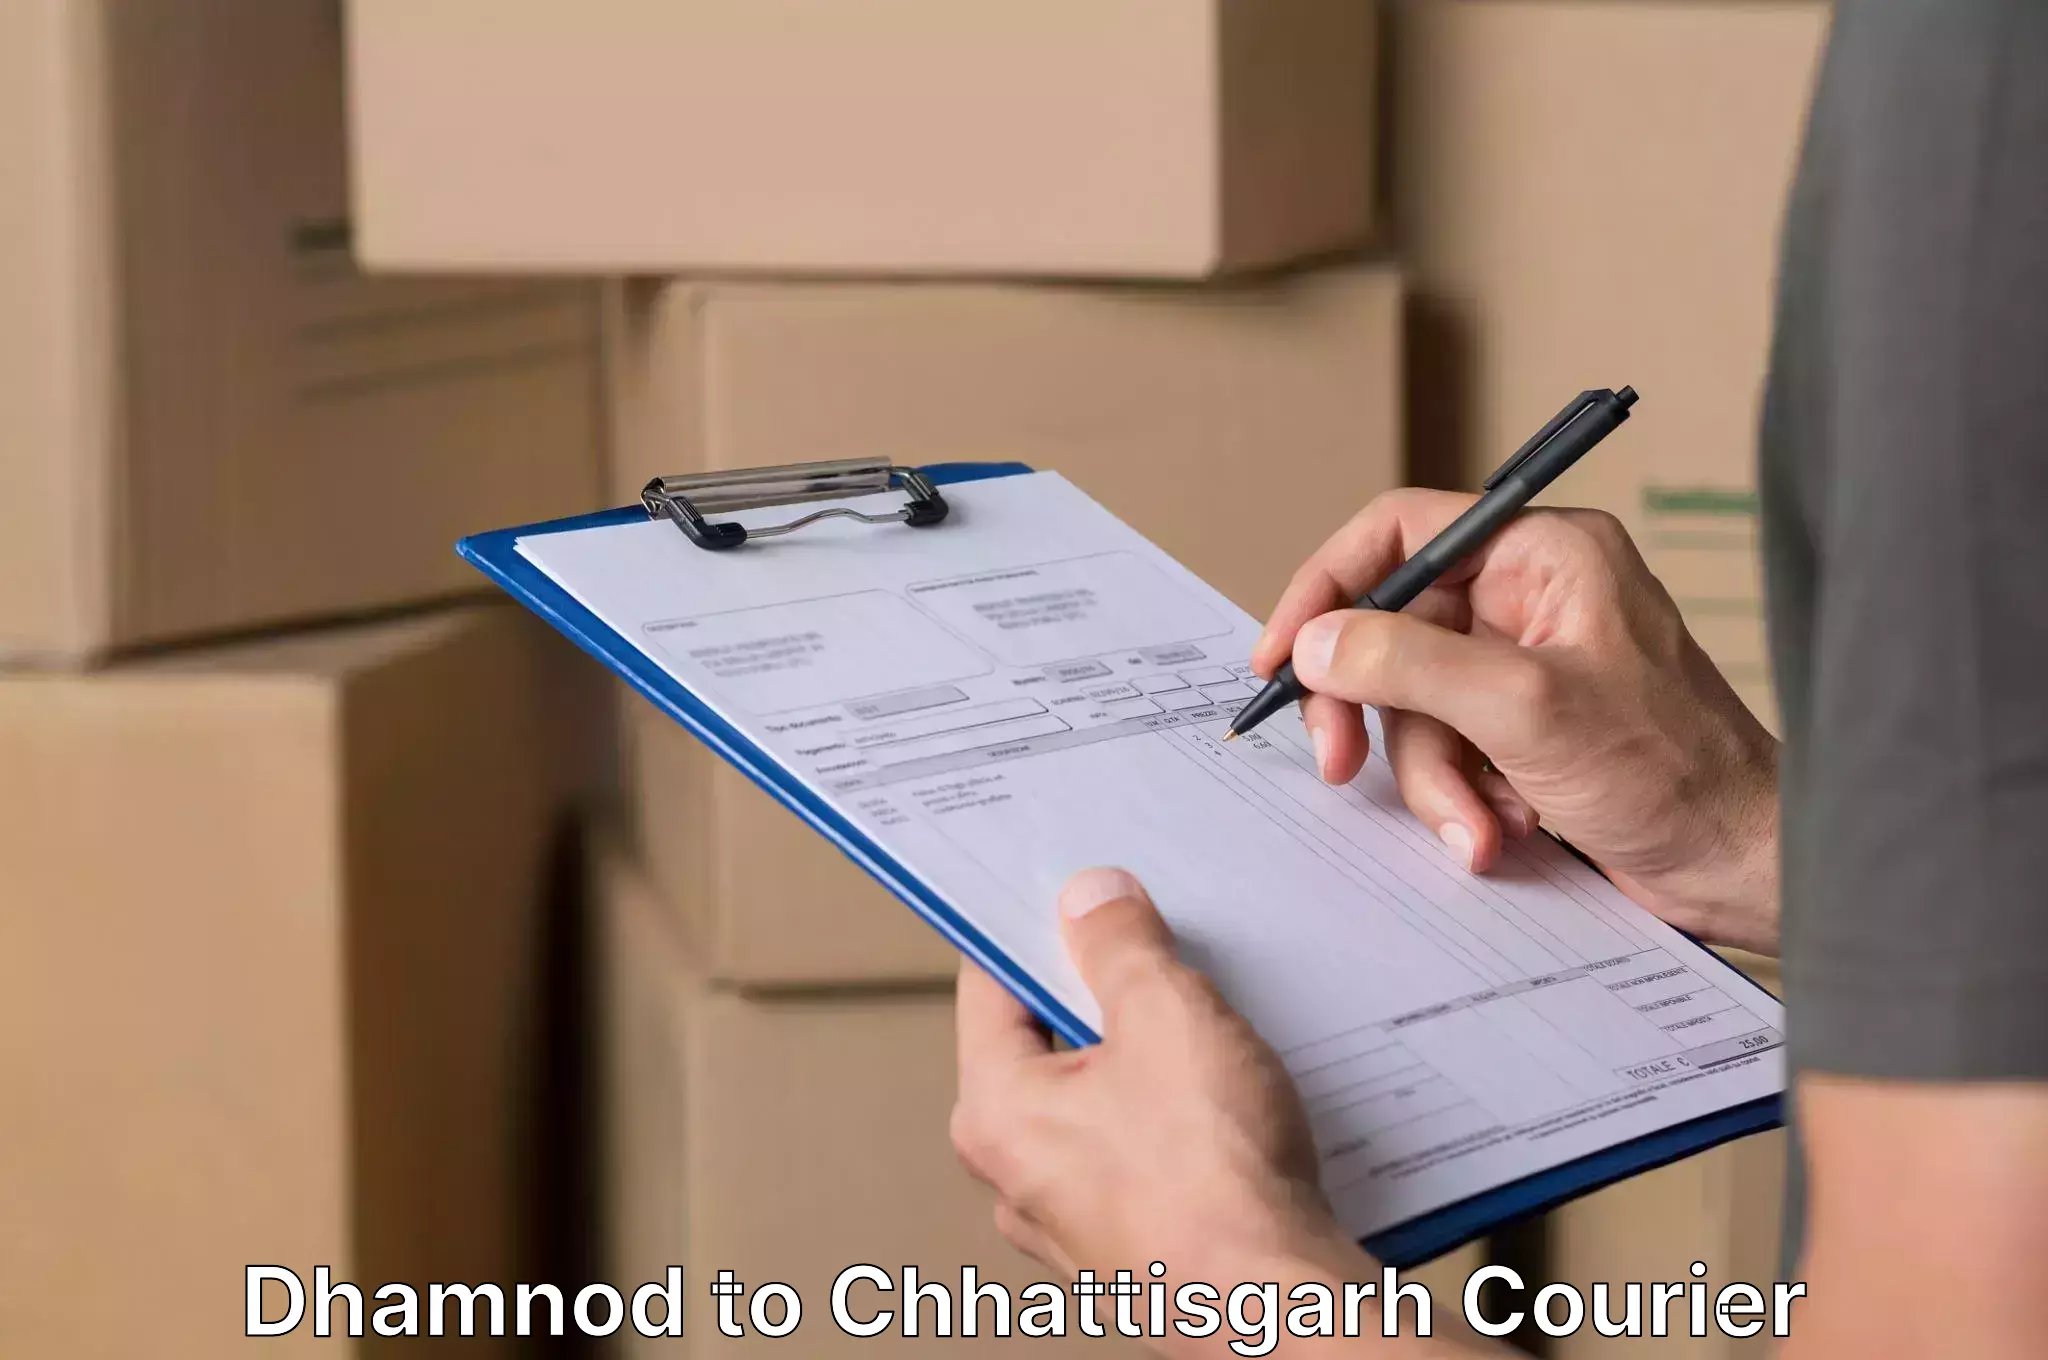 Household goods movers Dhamnod to Patna Chhattisgarh